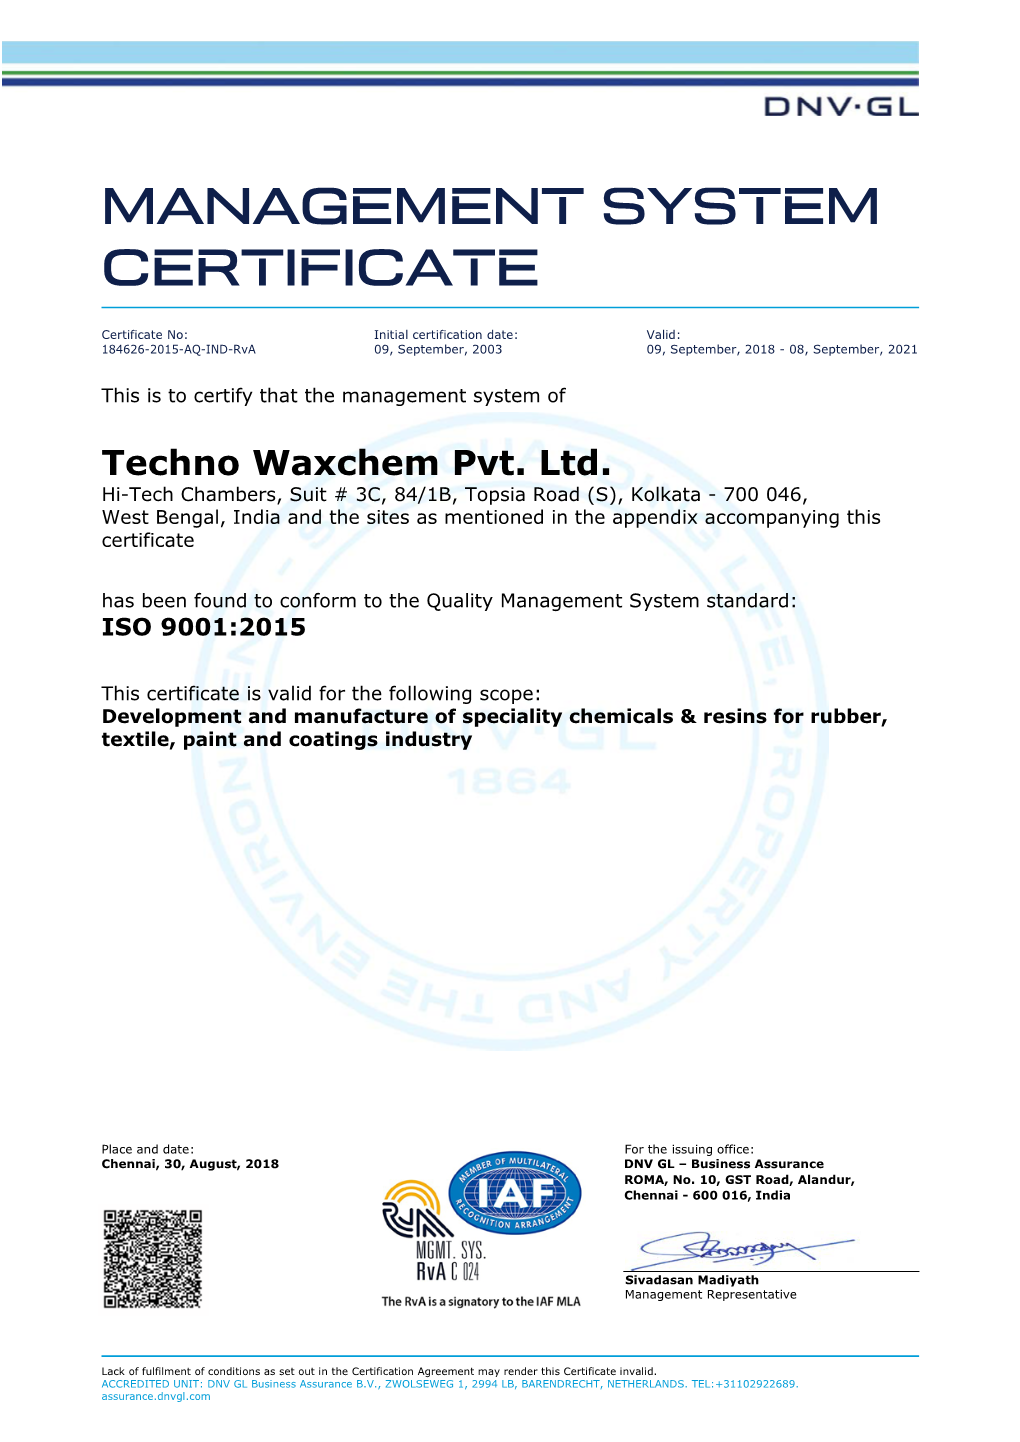 Techno Waxchem Pvt. Ltd